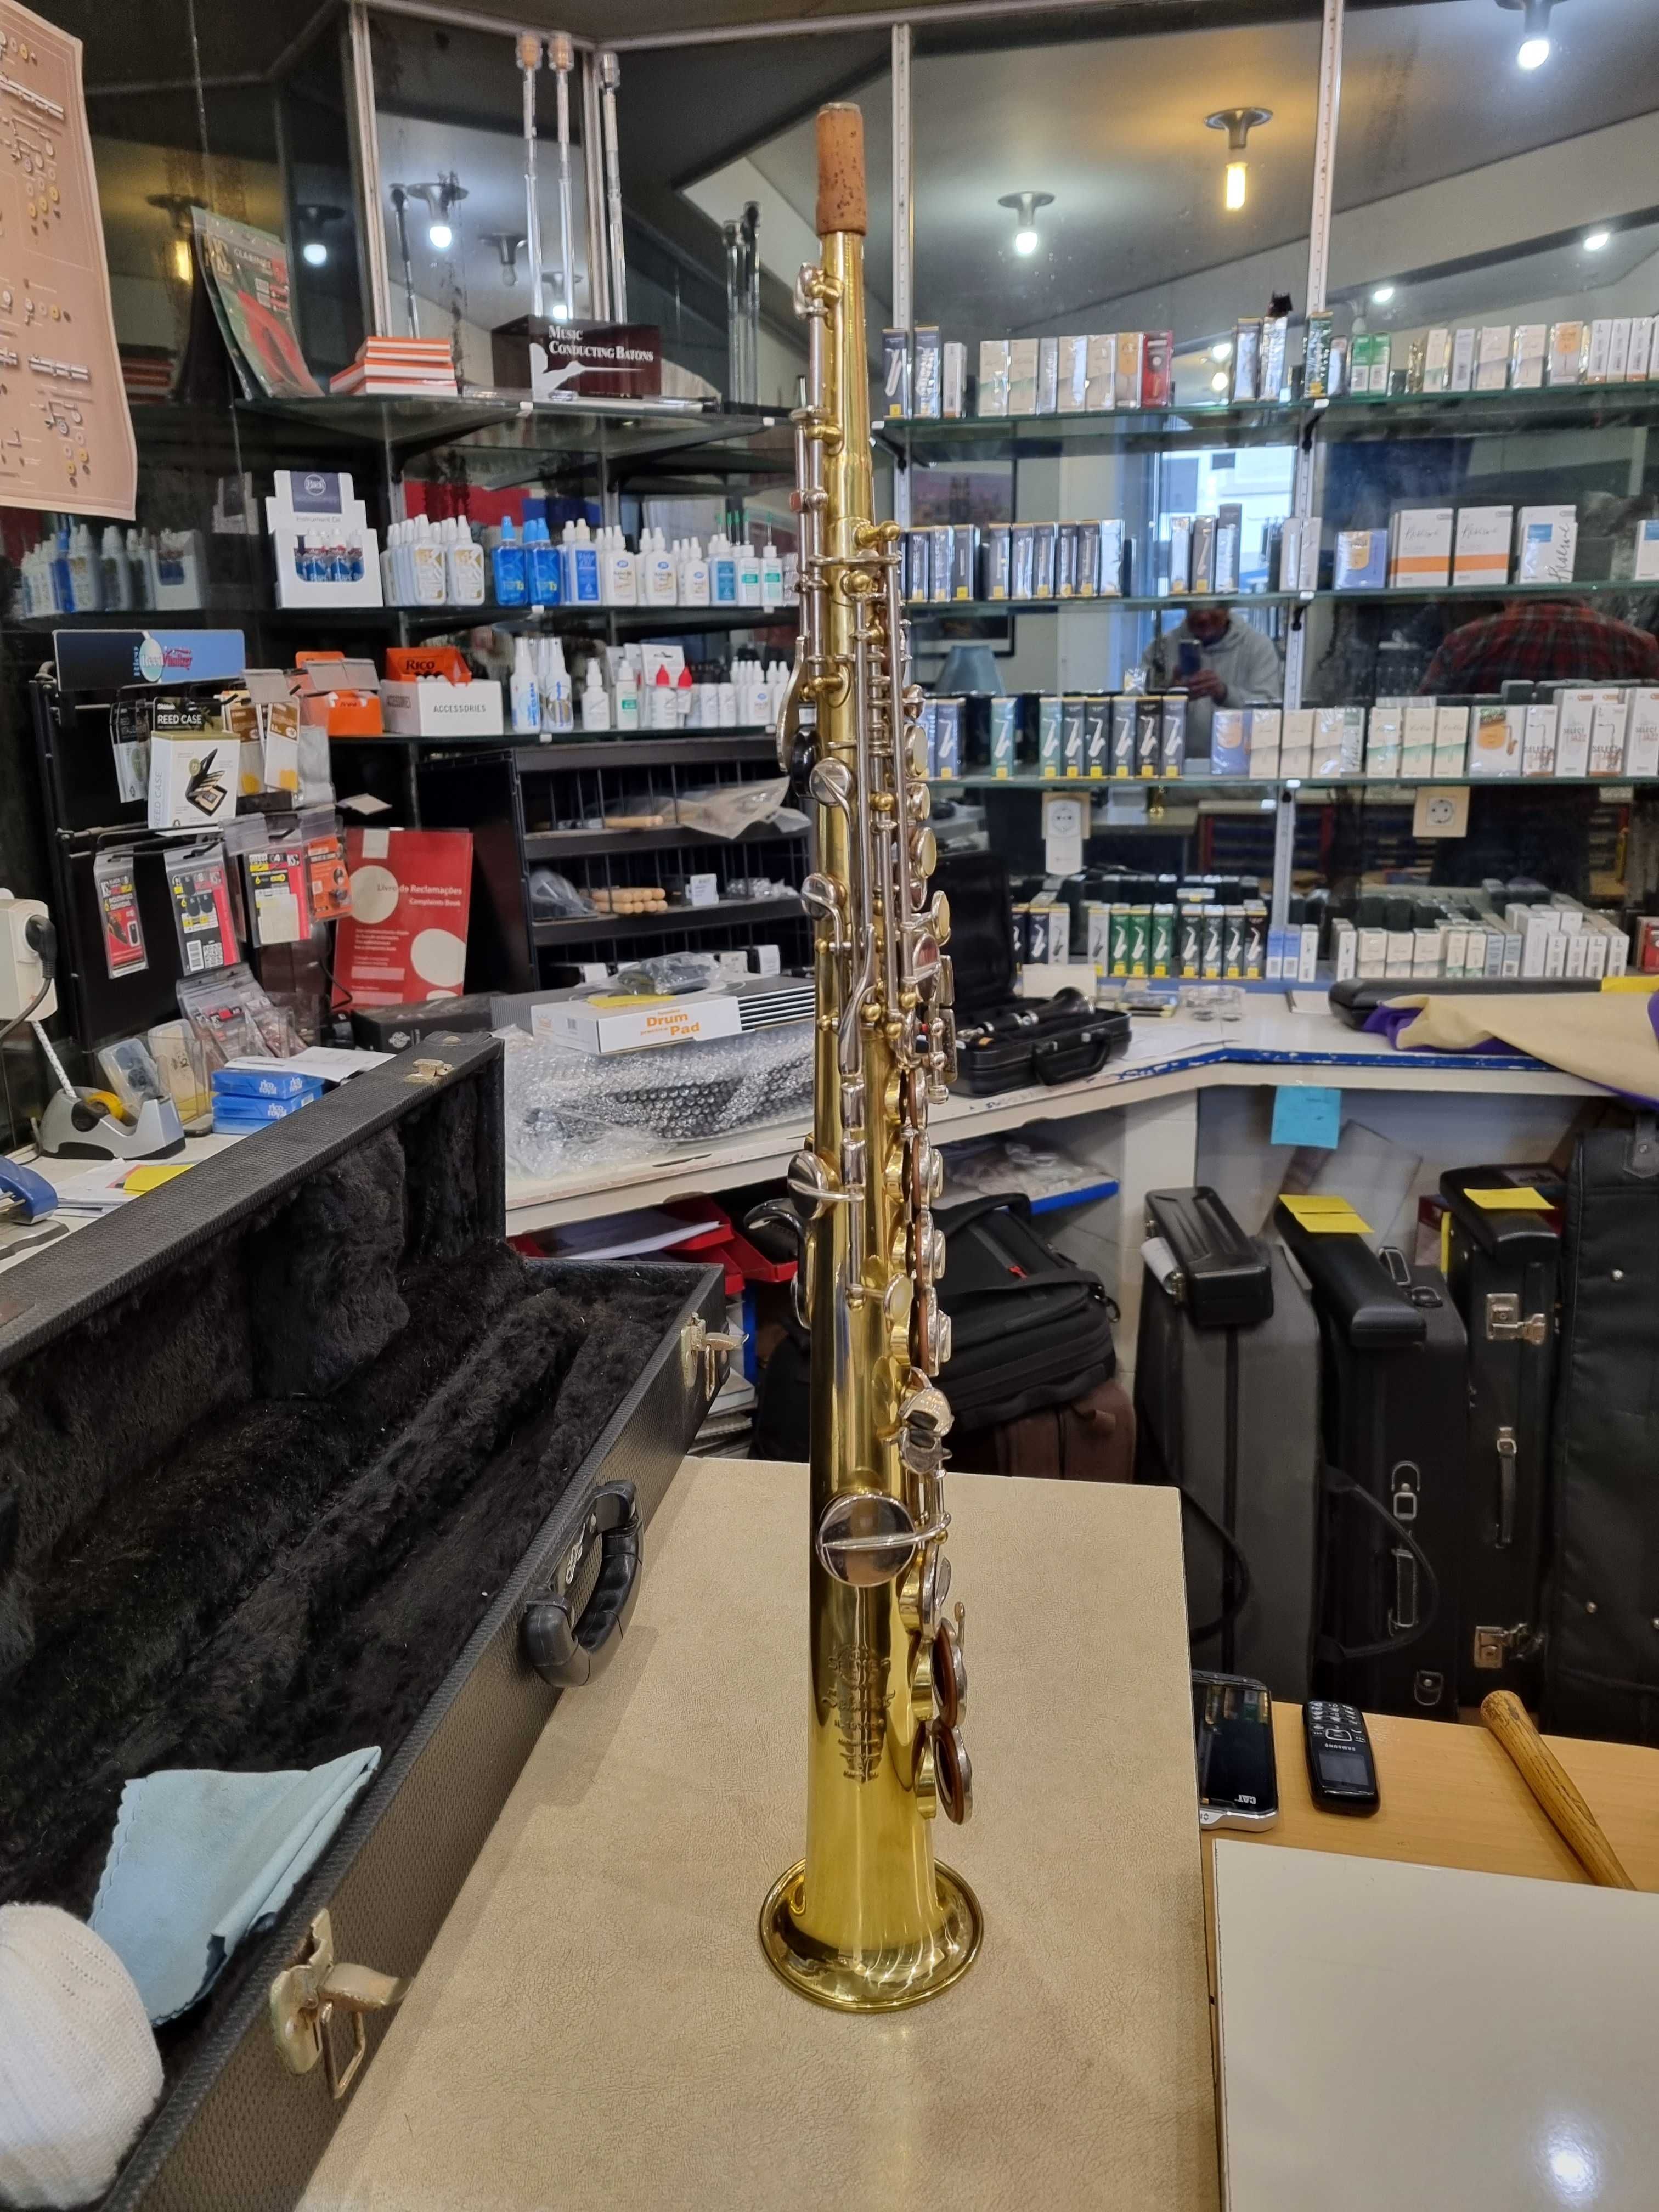 Saxofone soprano Selmer MARK VI Made in France